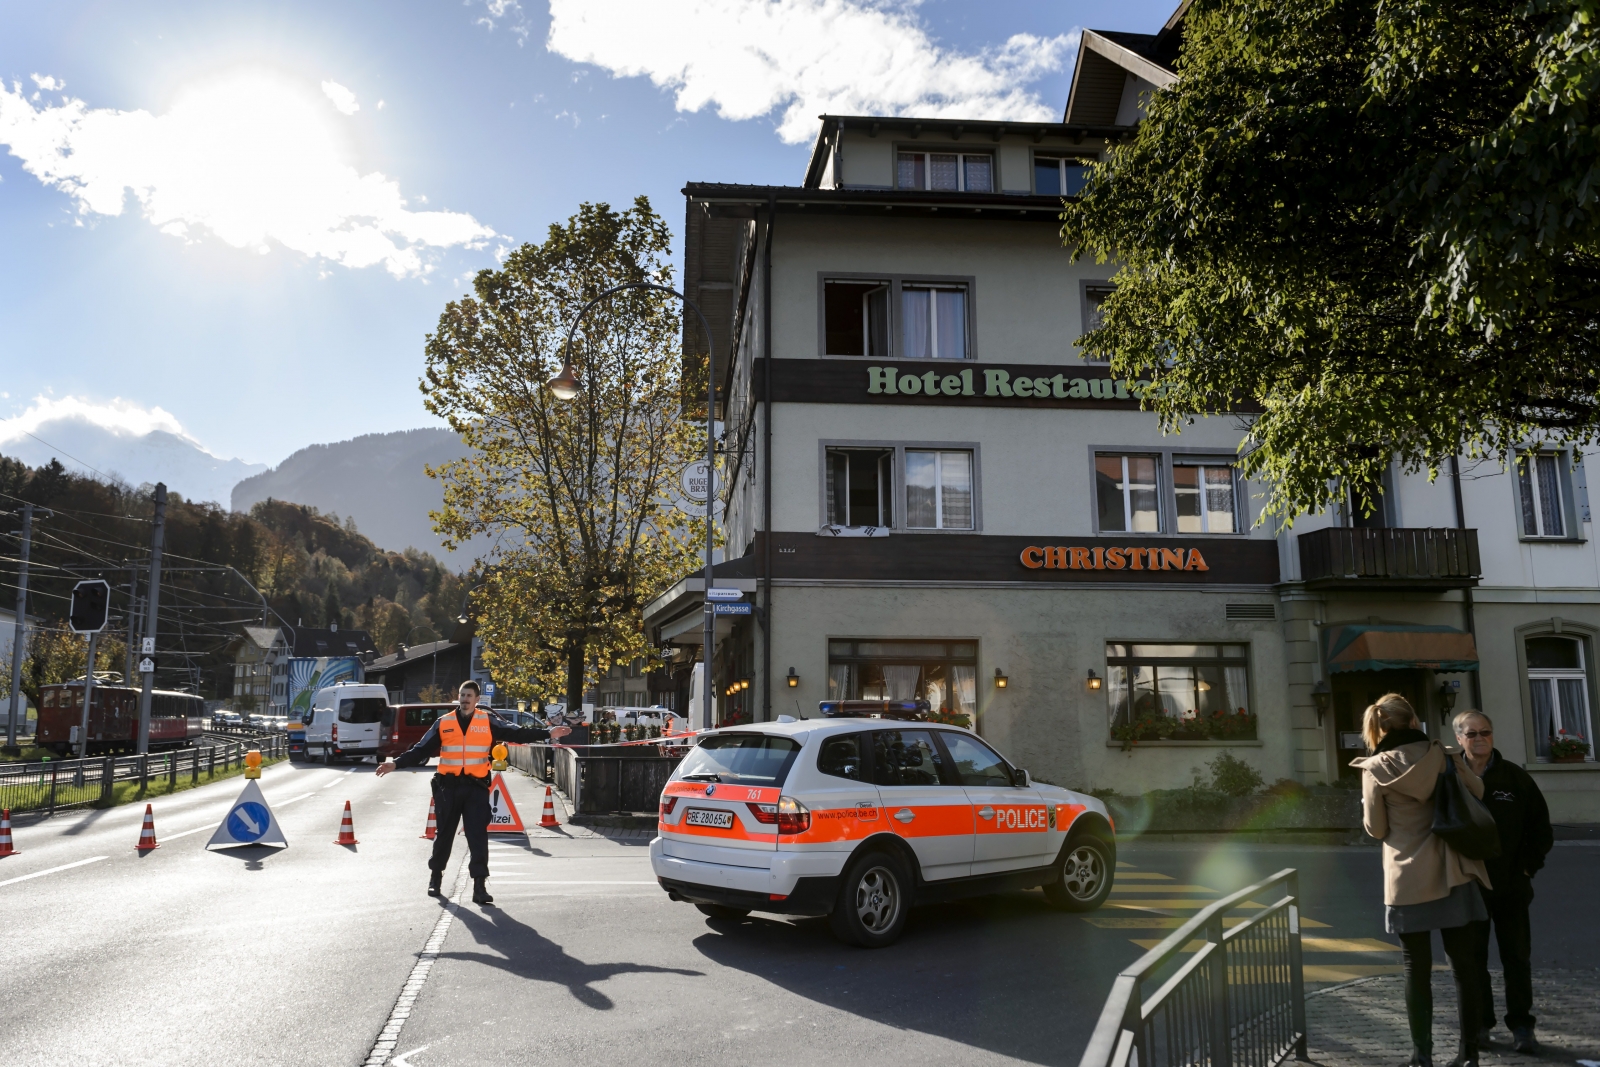 Switzerland Shooting: Three Dead in Alpine Wilderswil Village